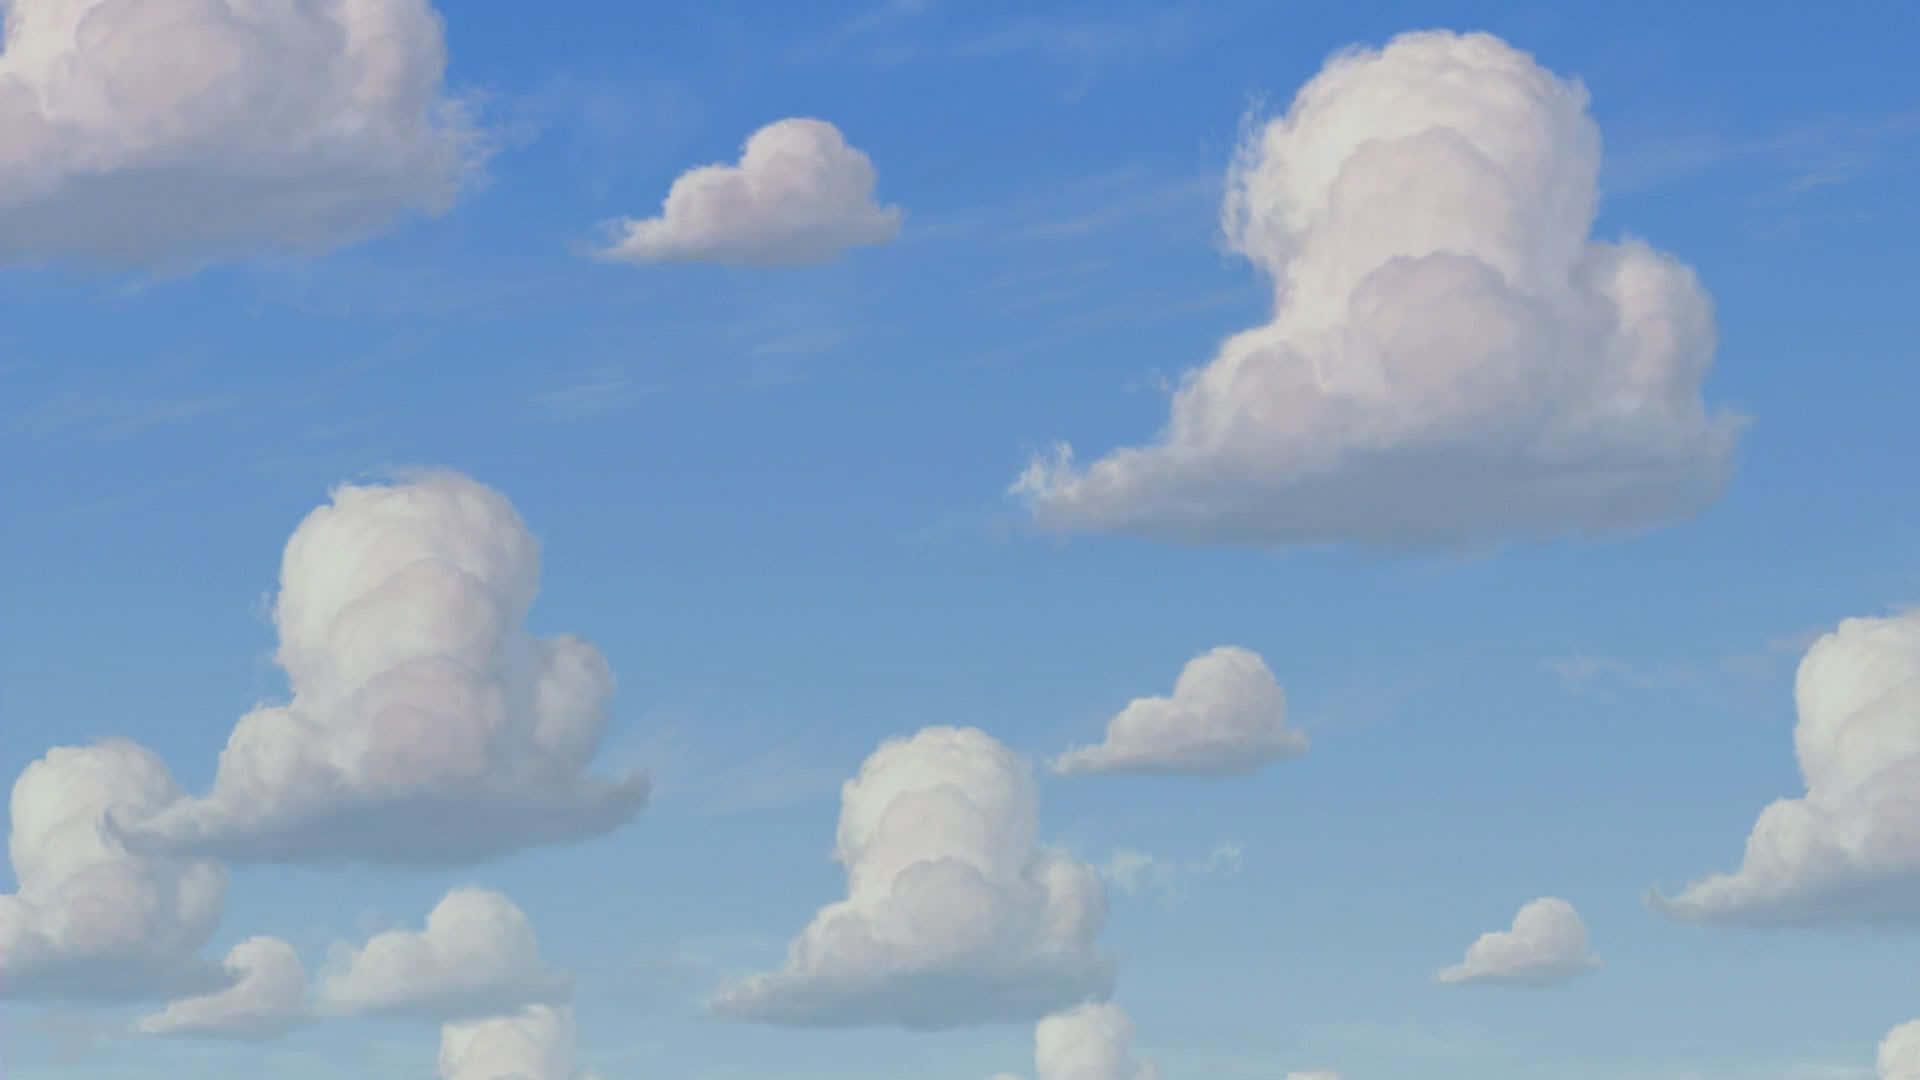 Olhepara O Céu E Veja Um Sonho Se Tornar Realidade - Uma Nuvem De Toy Story! Papel de Parede